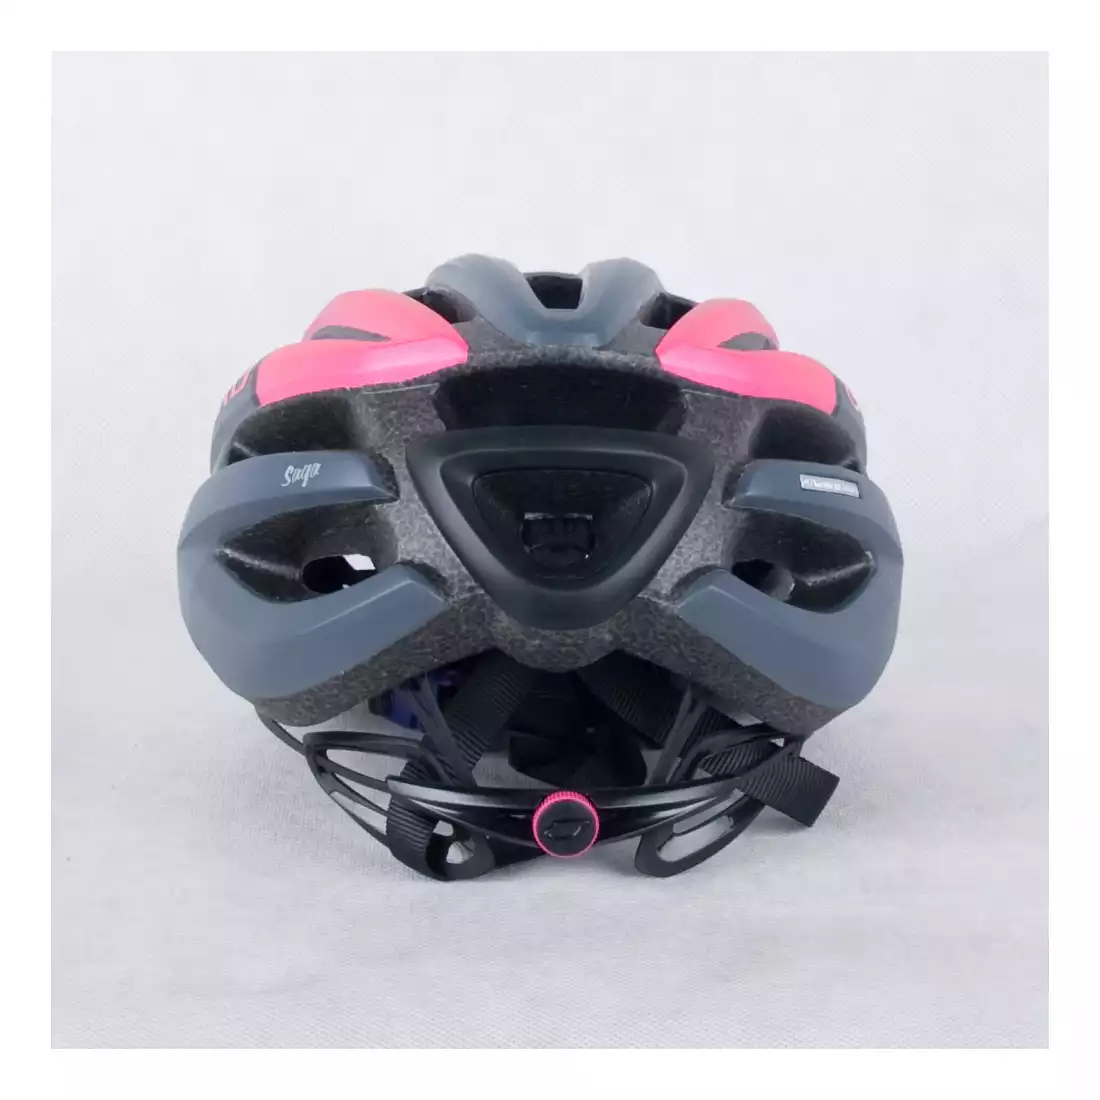 GIRO SAGA - damski kask rowerowy czarno-różowy